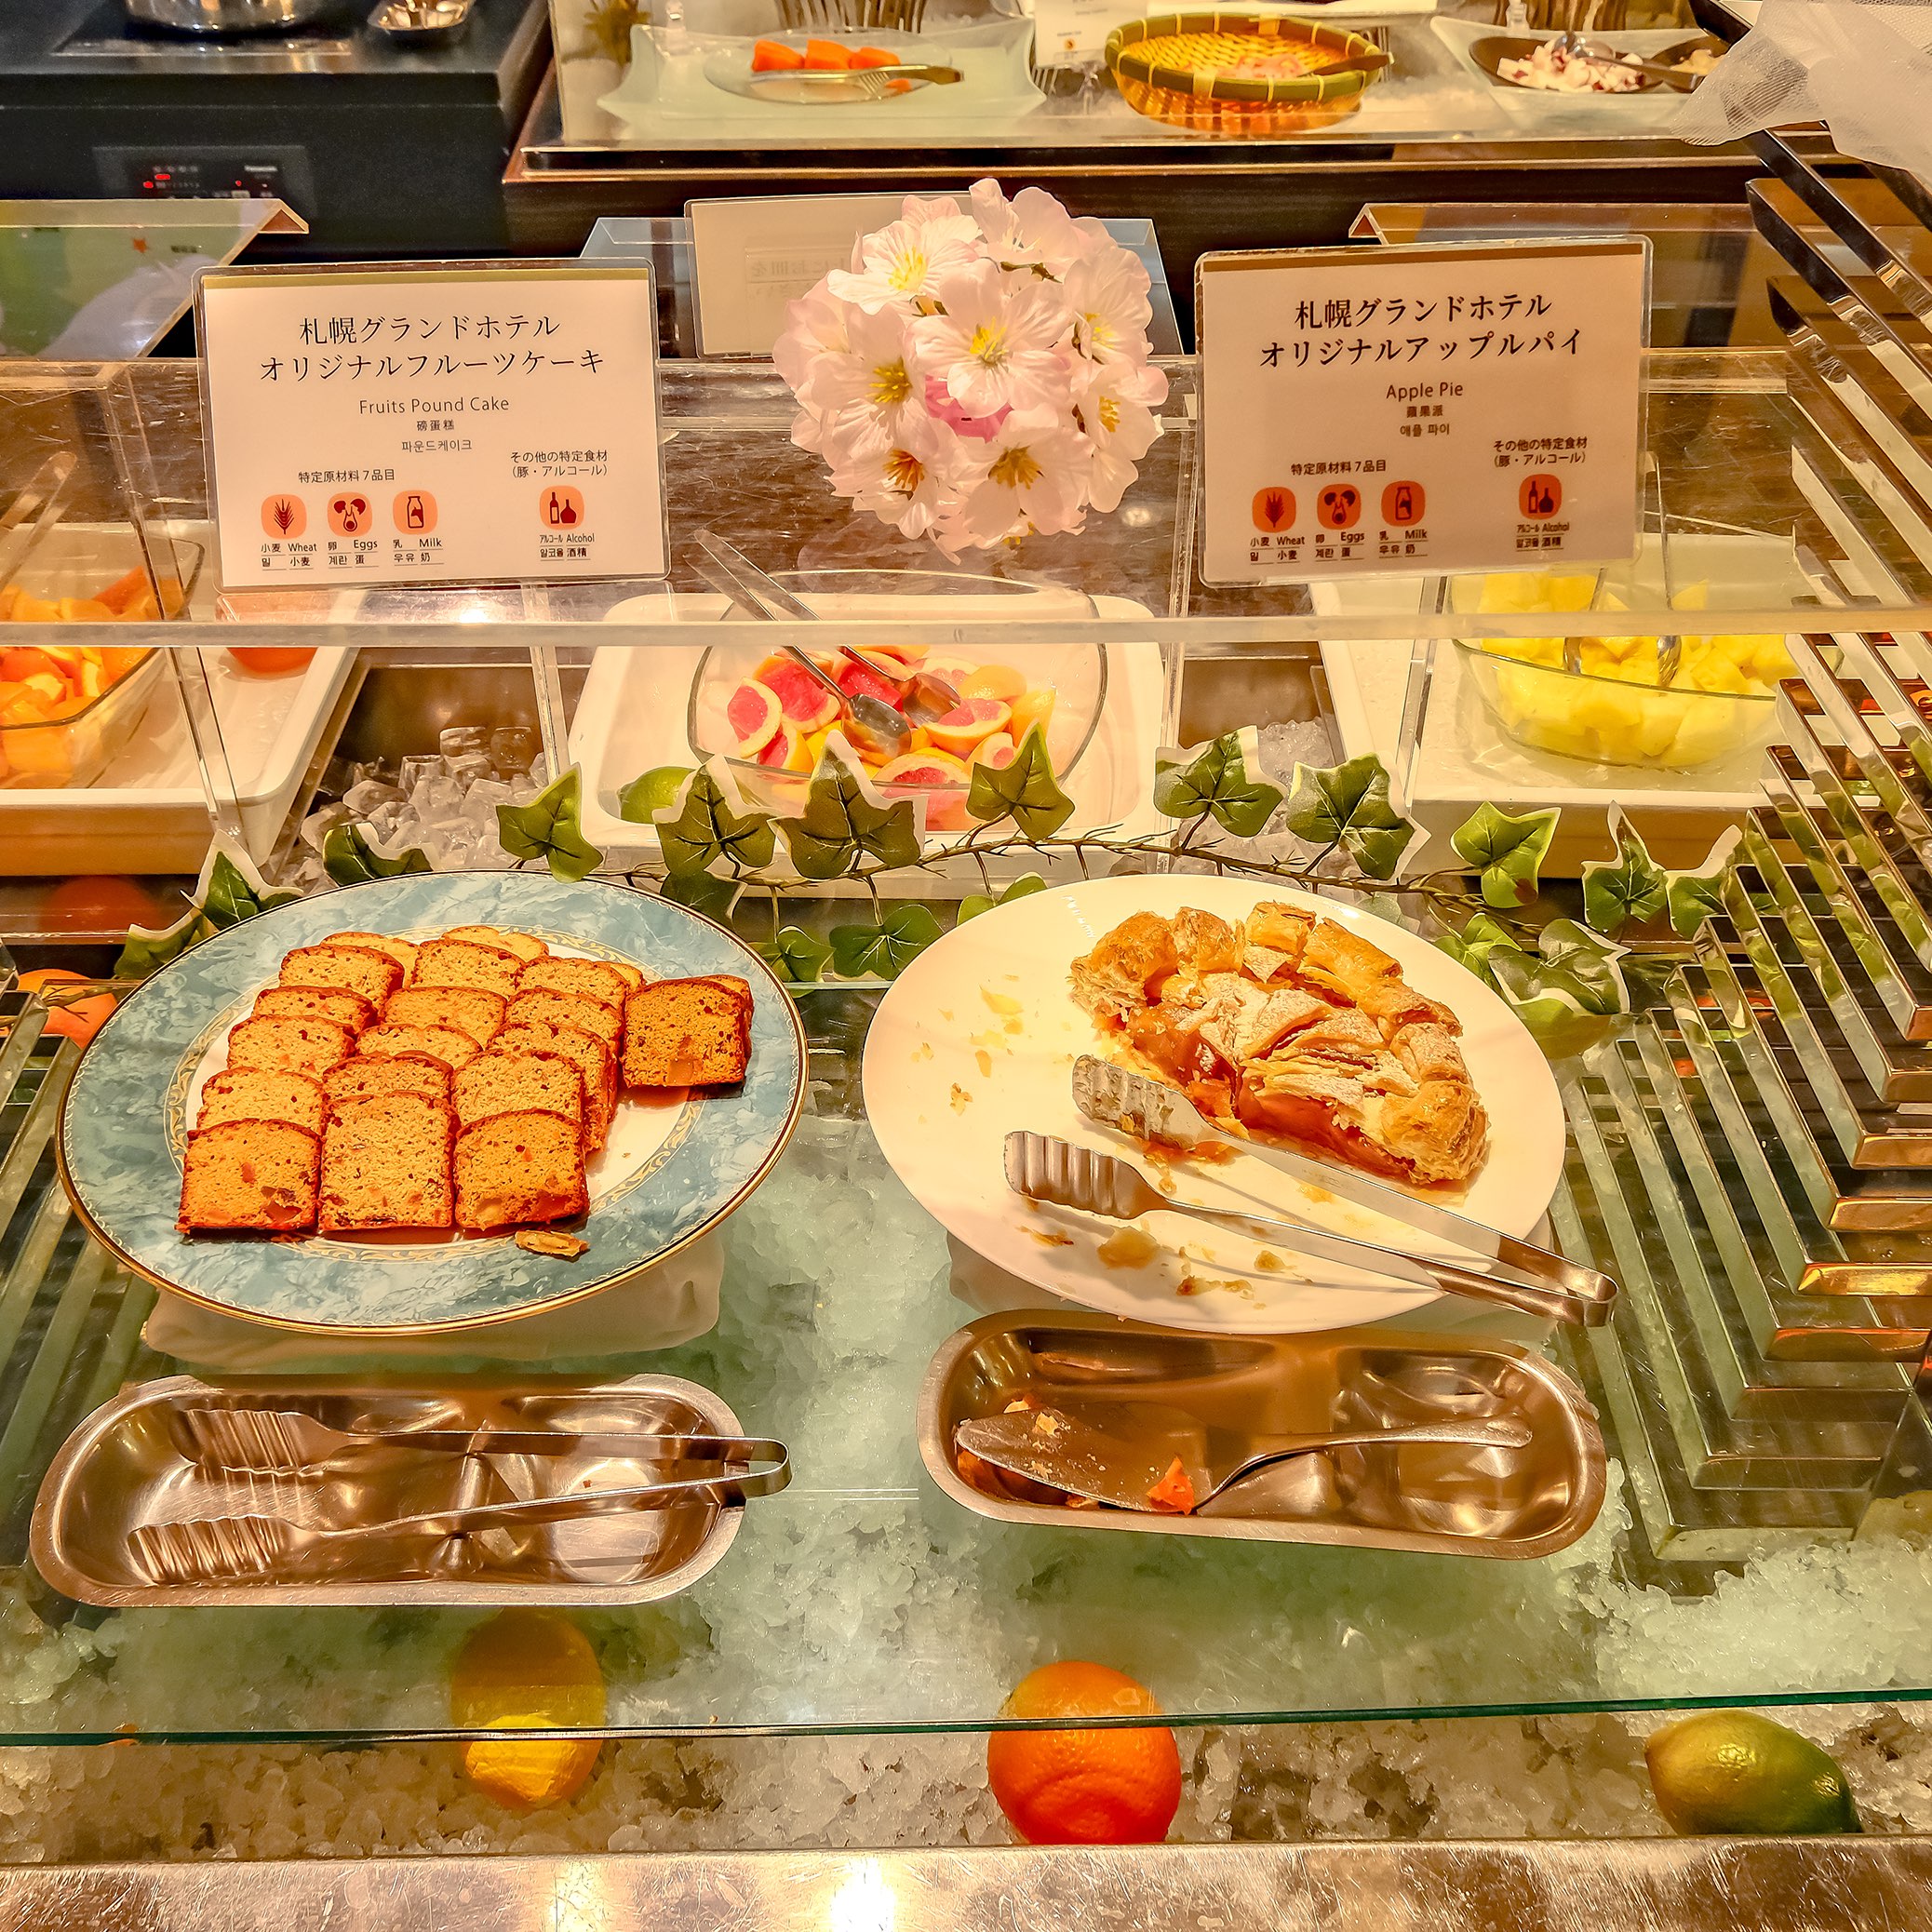 札幌グランドホテル 朝食ビュッフェ名物のアップルパイなどのデザートコーナー Trip Com 札幌の旅のブログ